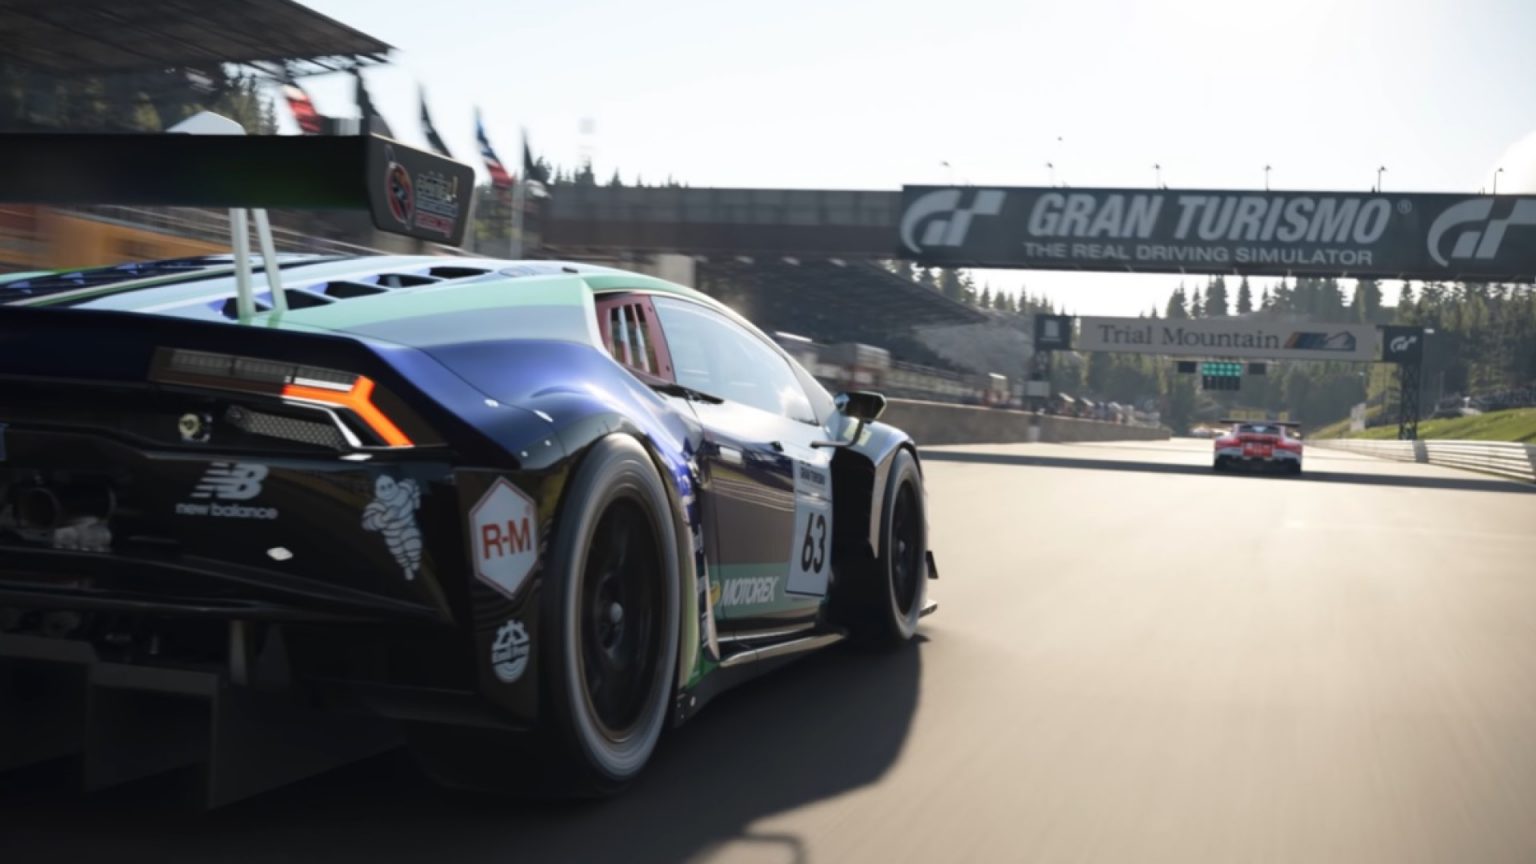 A principios de agosto, Gran Turismo 7 recibirá cuatro coches nuevos, - afirma el productor de la serie